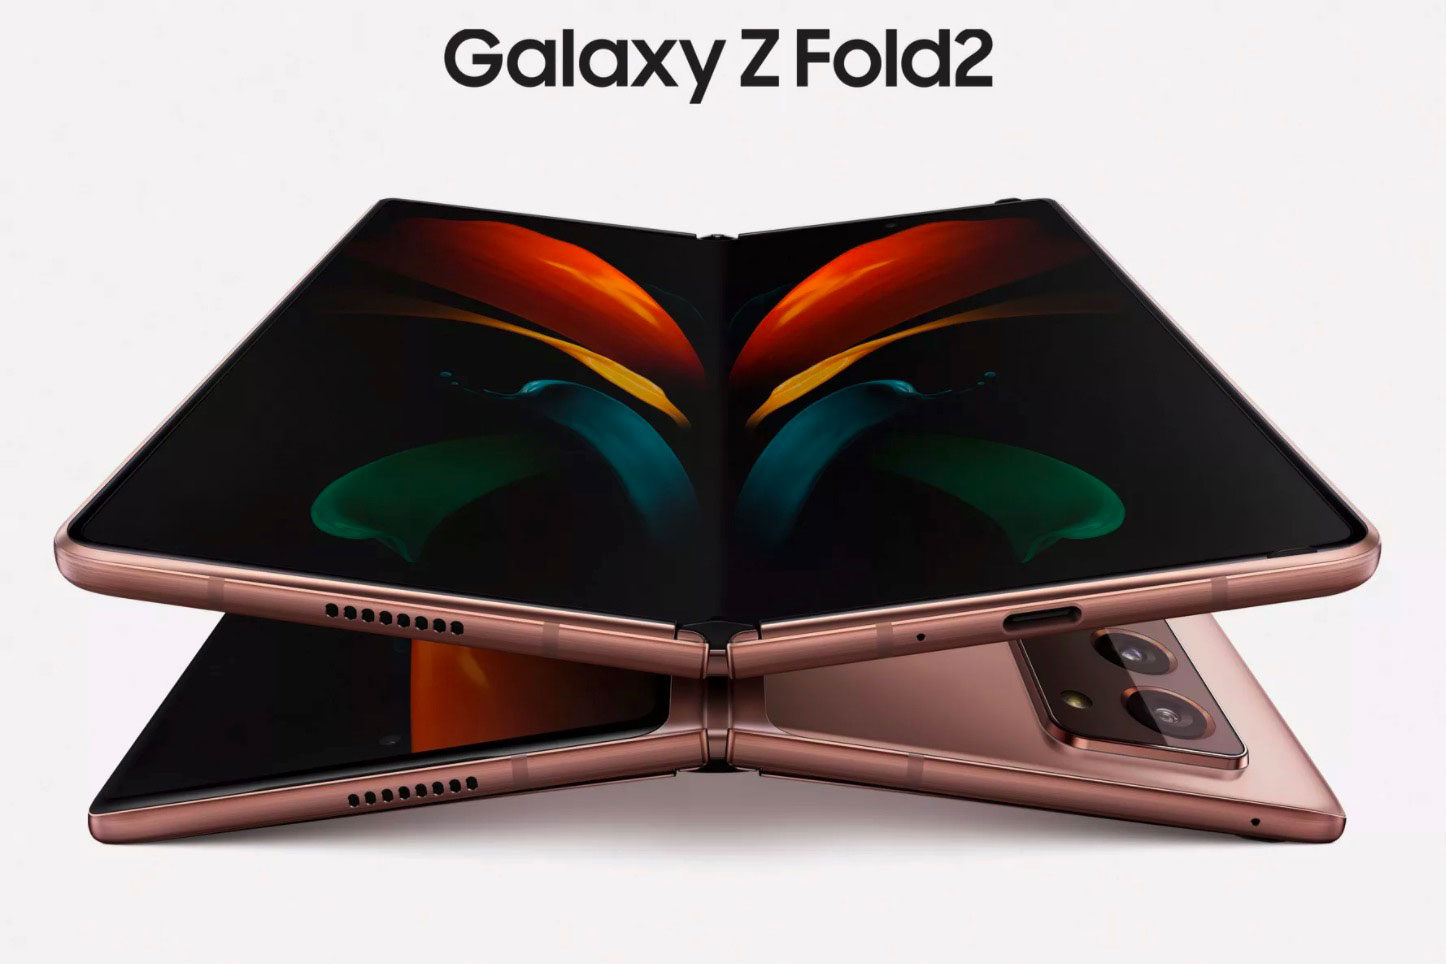  Comment suivre la conférence du Galaxy Z Fold 2 en direct ?